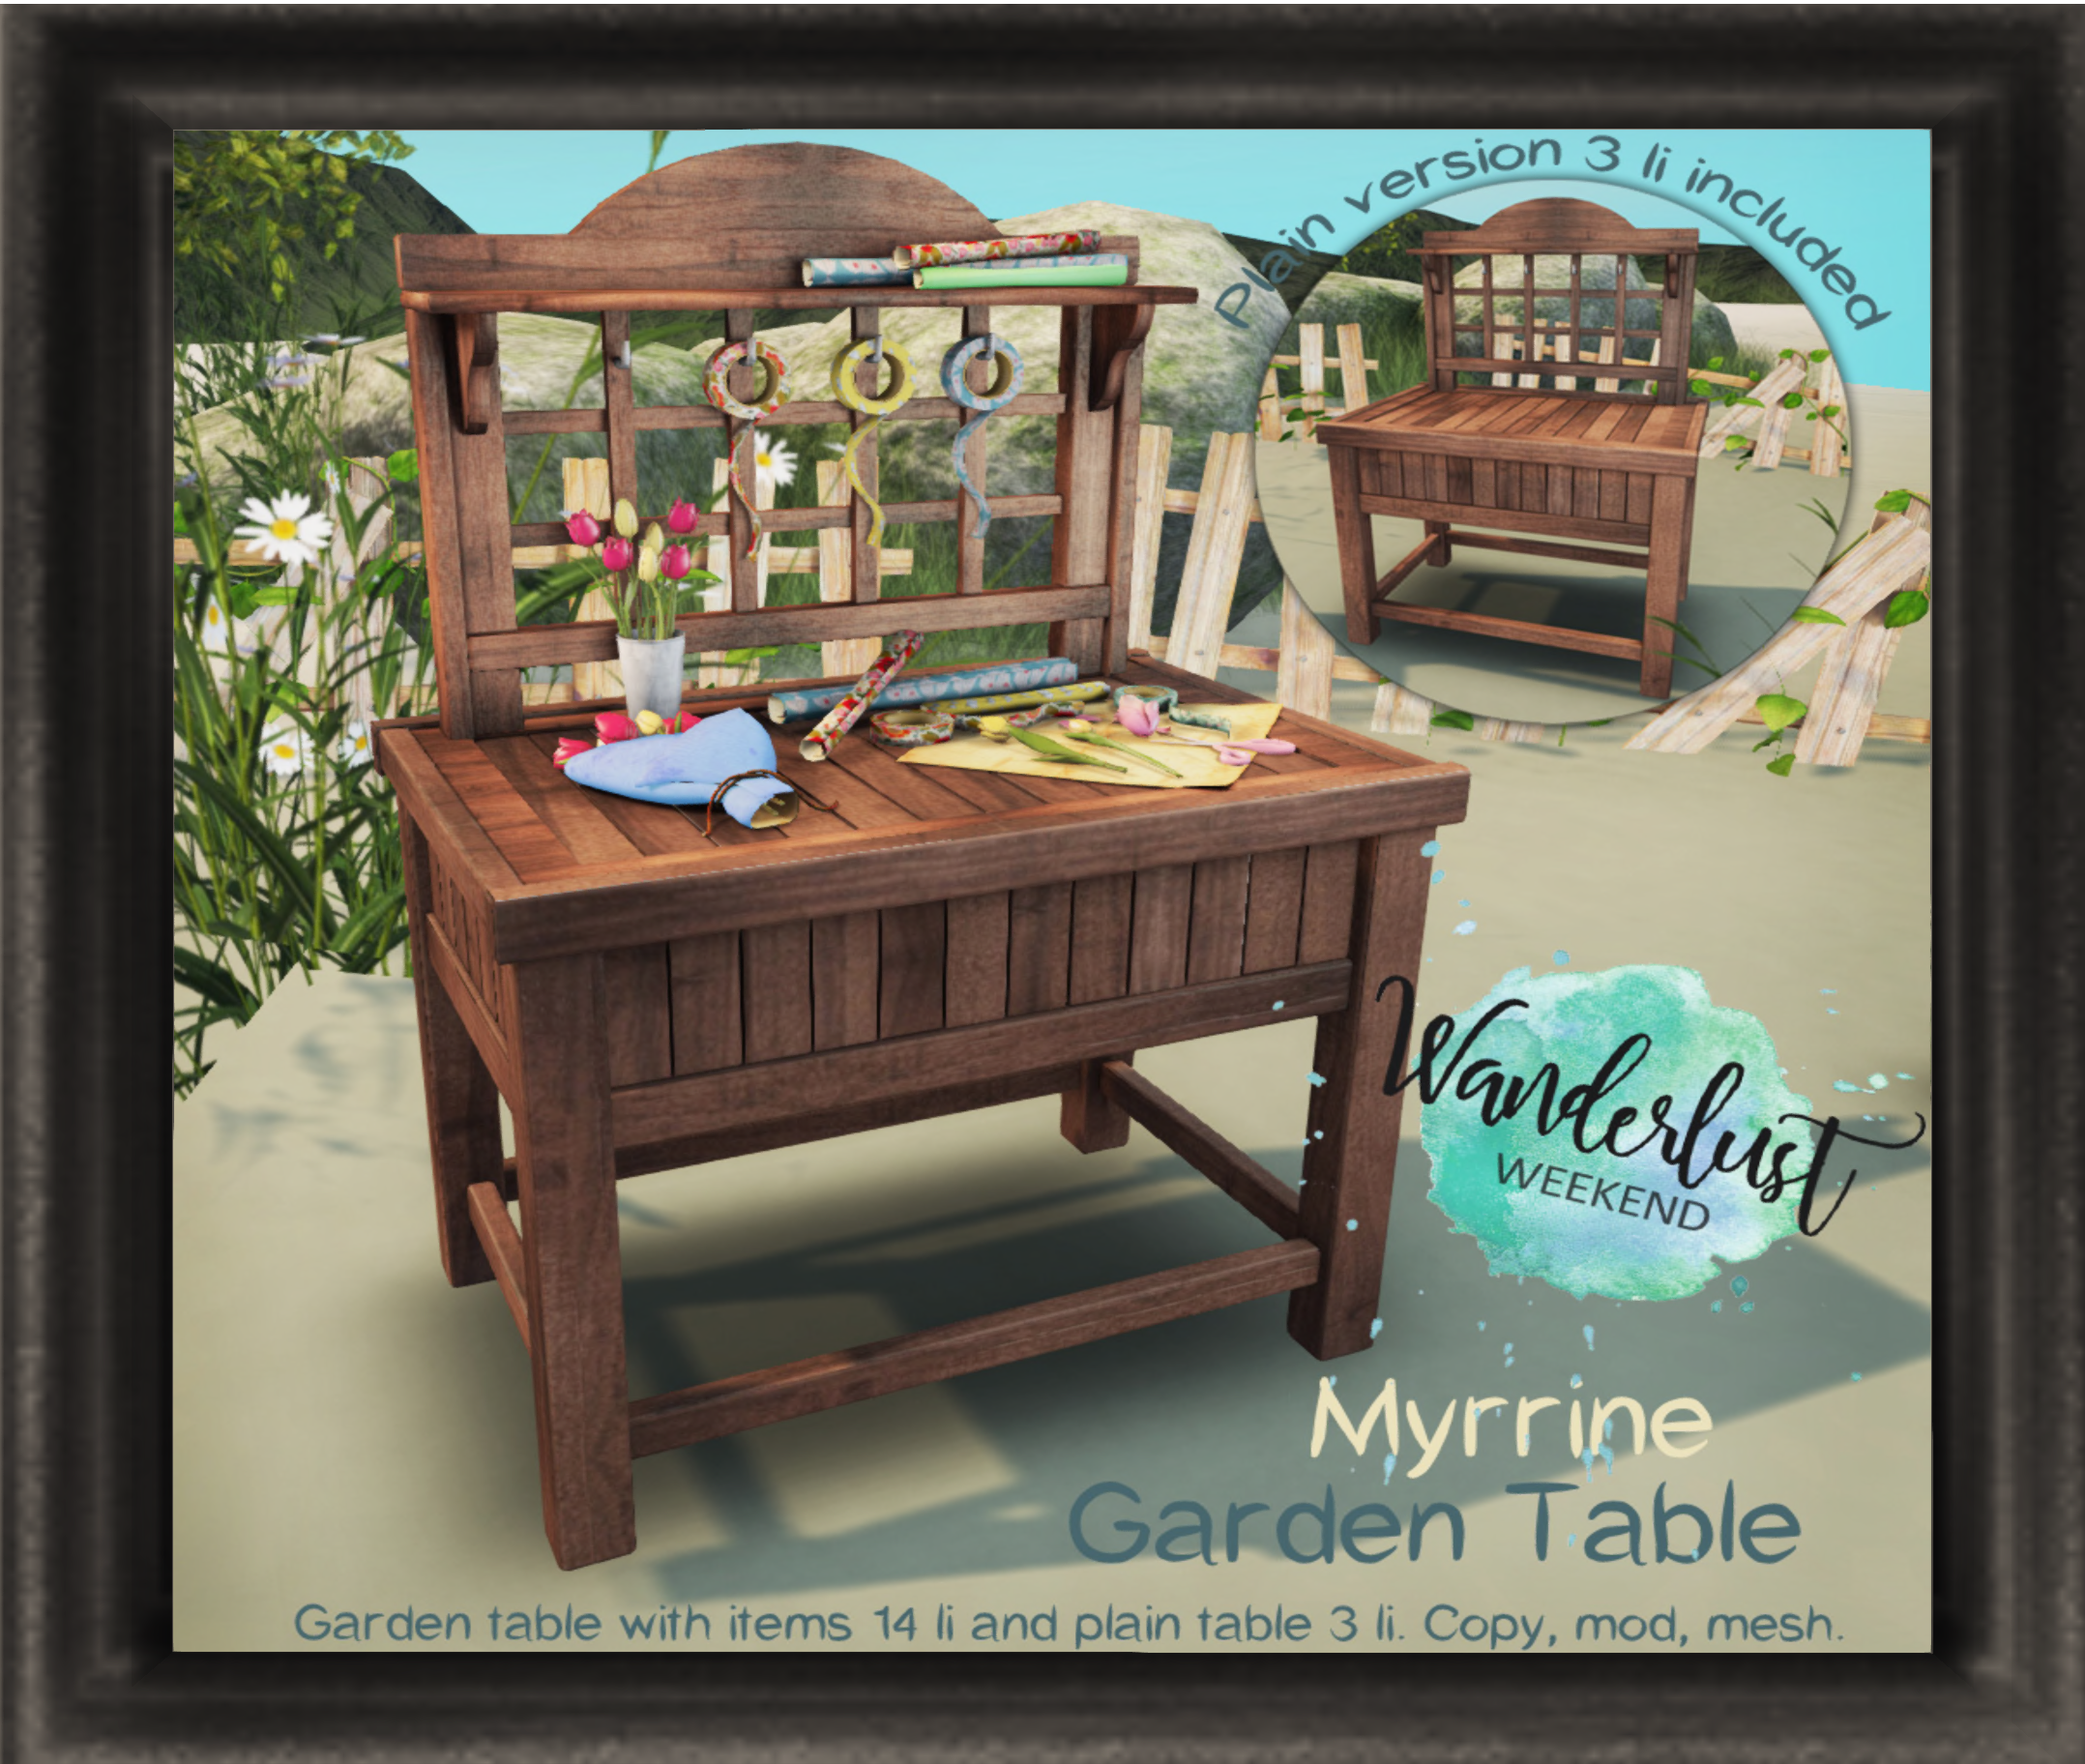 Myrrine – Garden Table